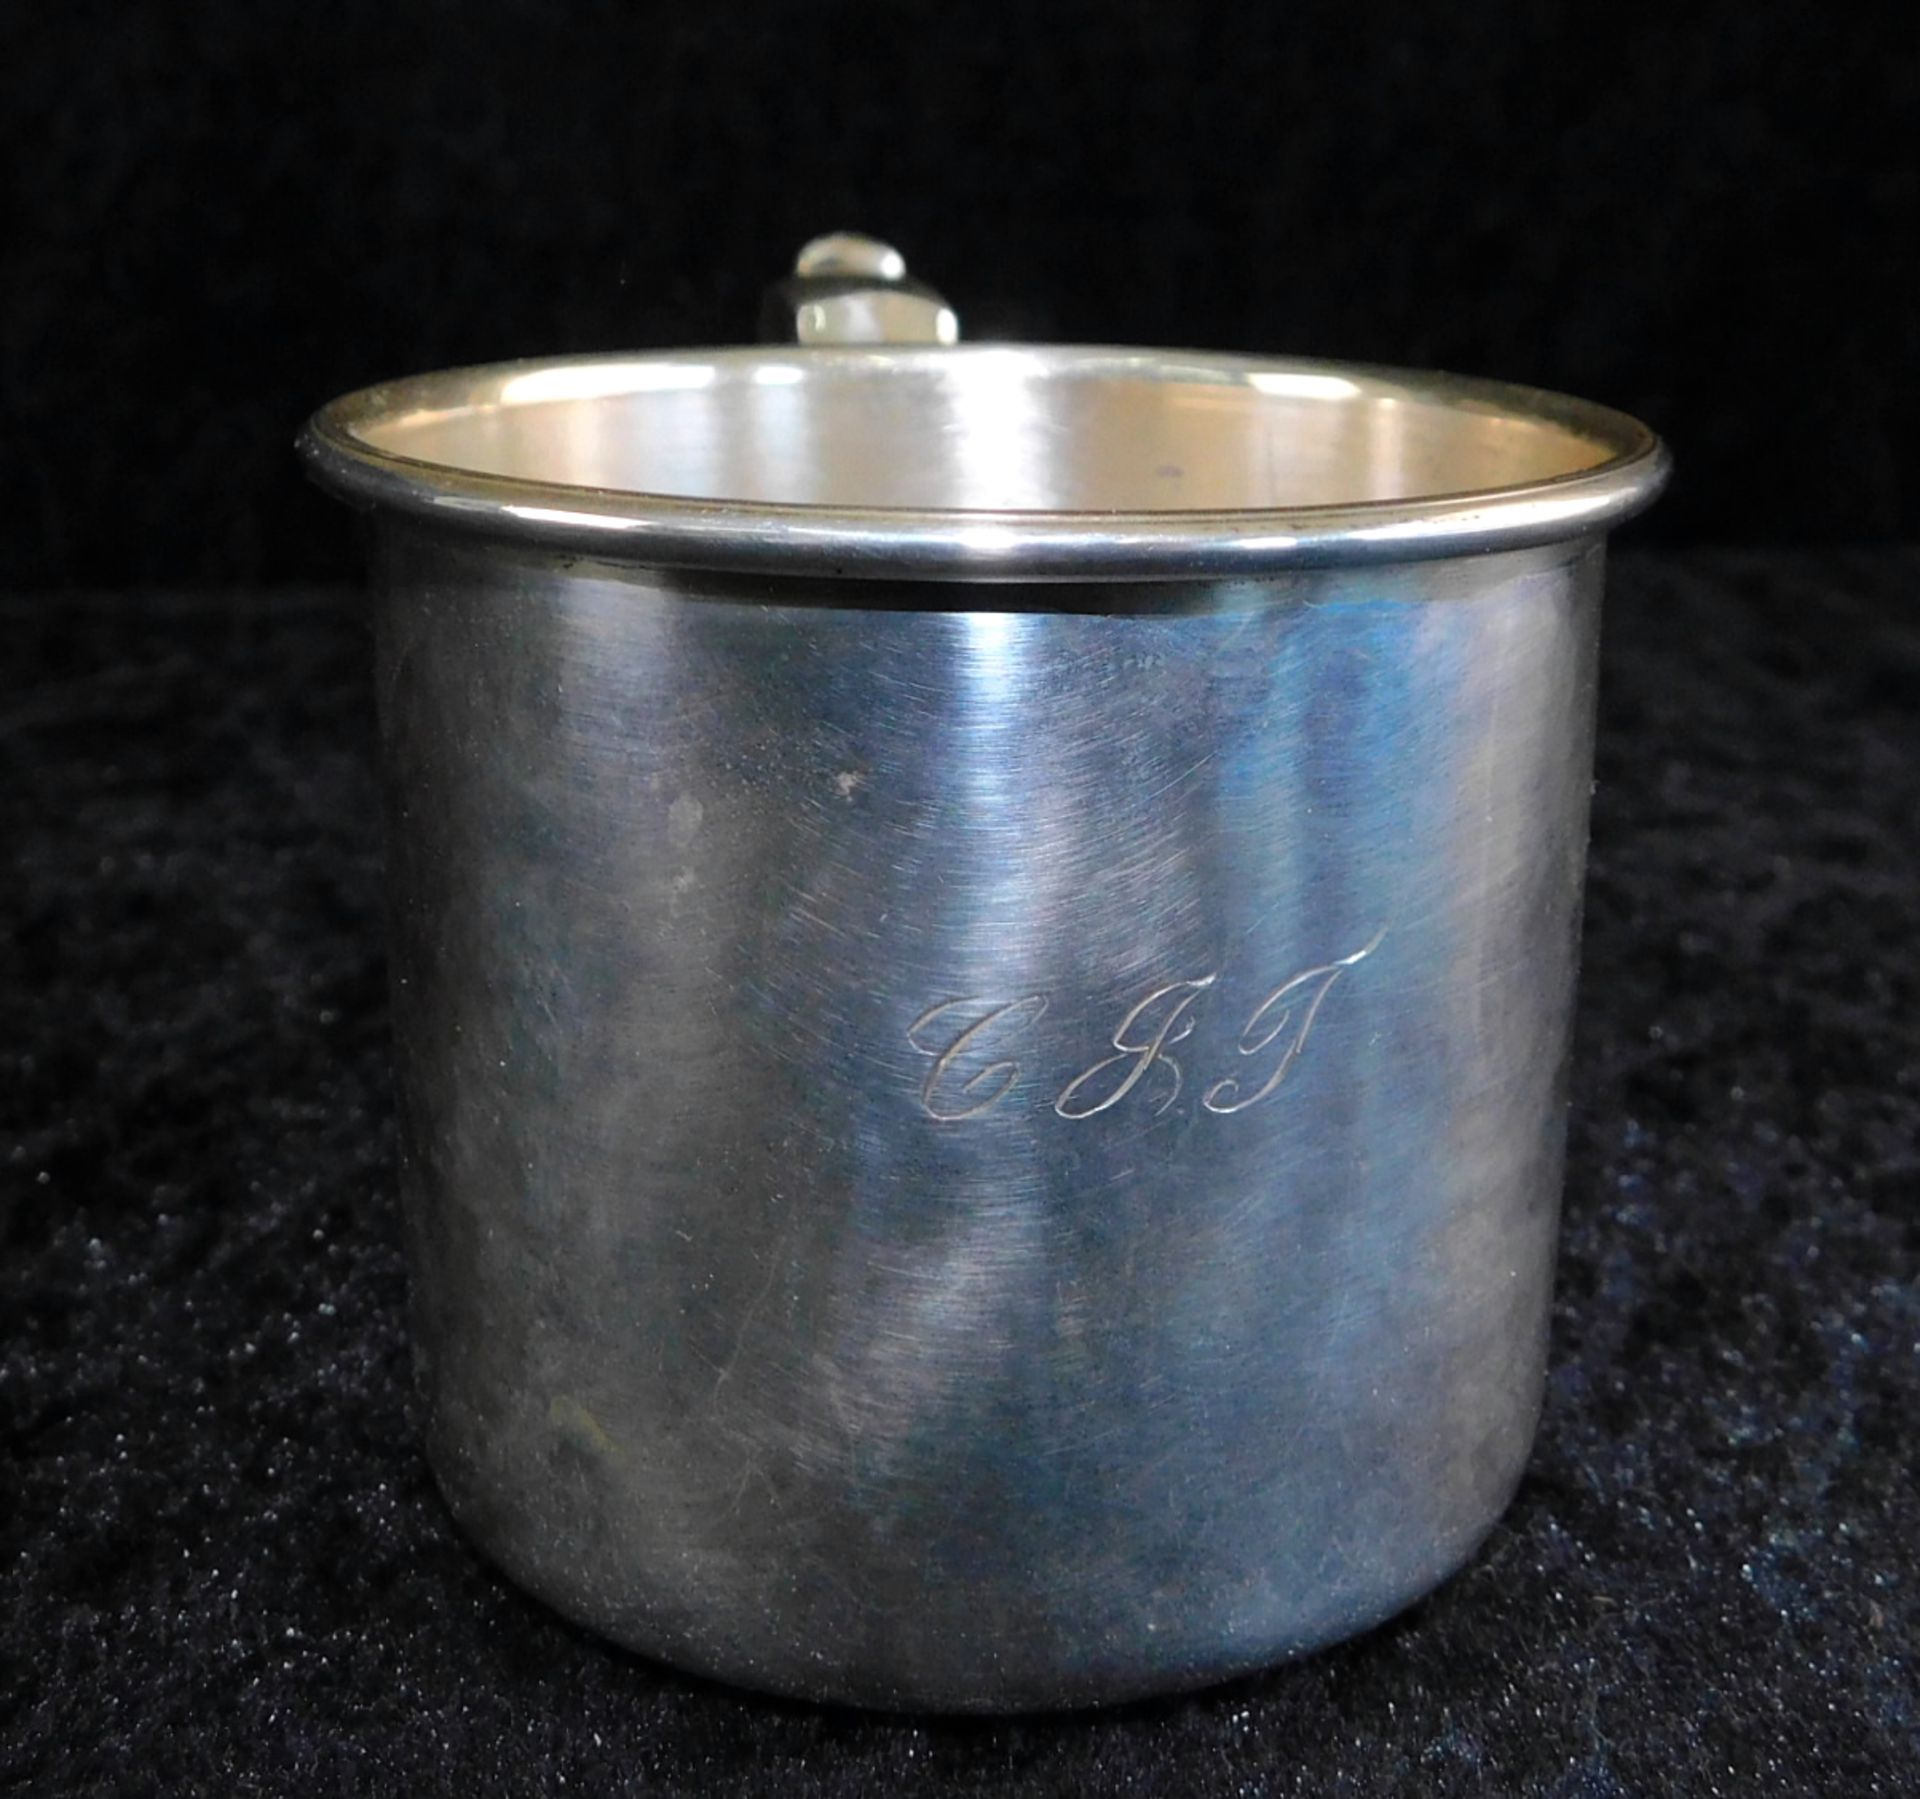 Tasse, Sterling Silber 925, gepunzt H.Gray co. inc., Nr 6409, Gewicht 68 g, Höhe 6 cm, Ø 7 cm, - Bild 5 aus 5